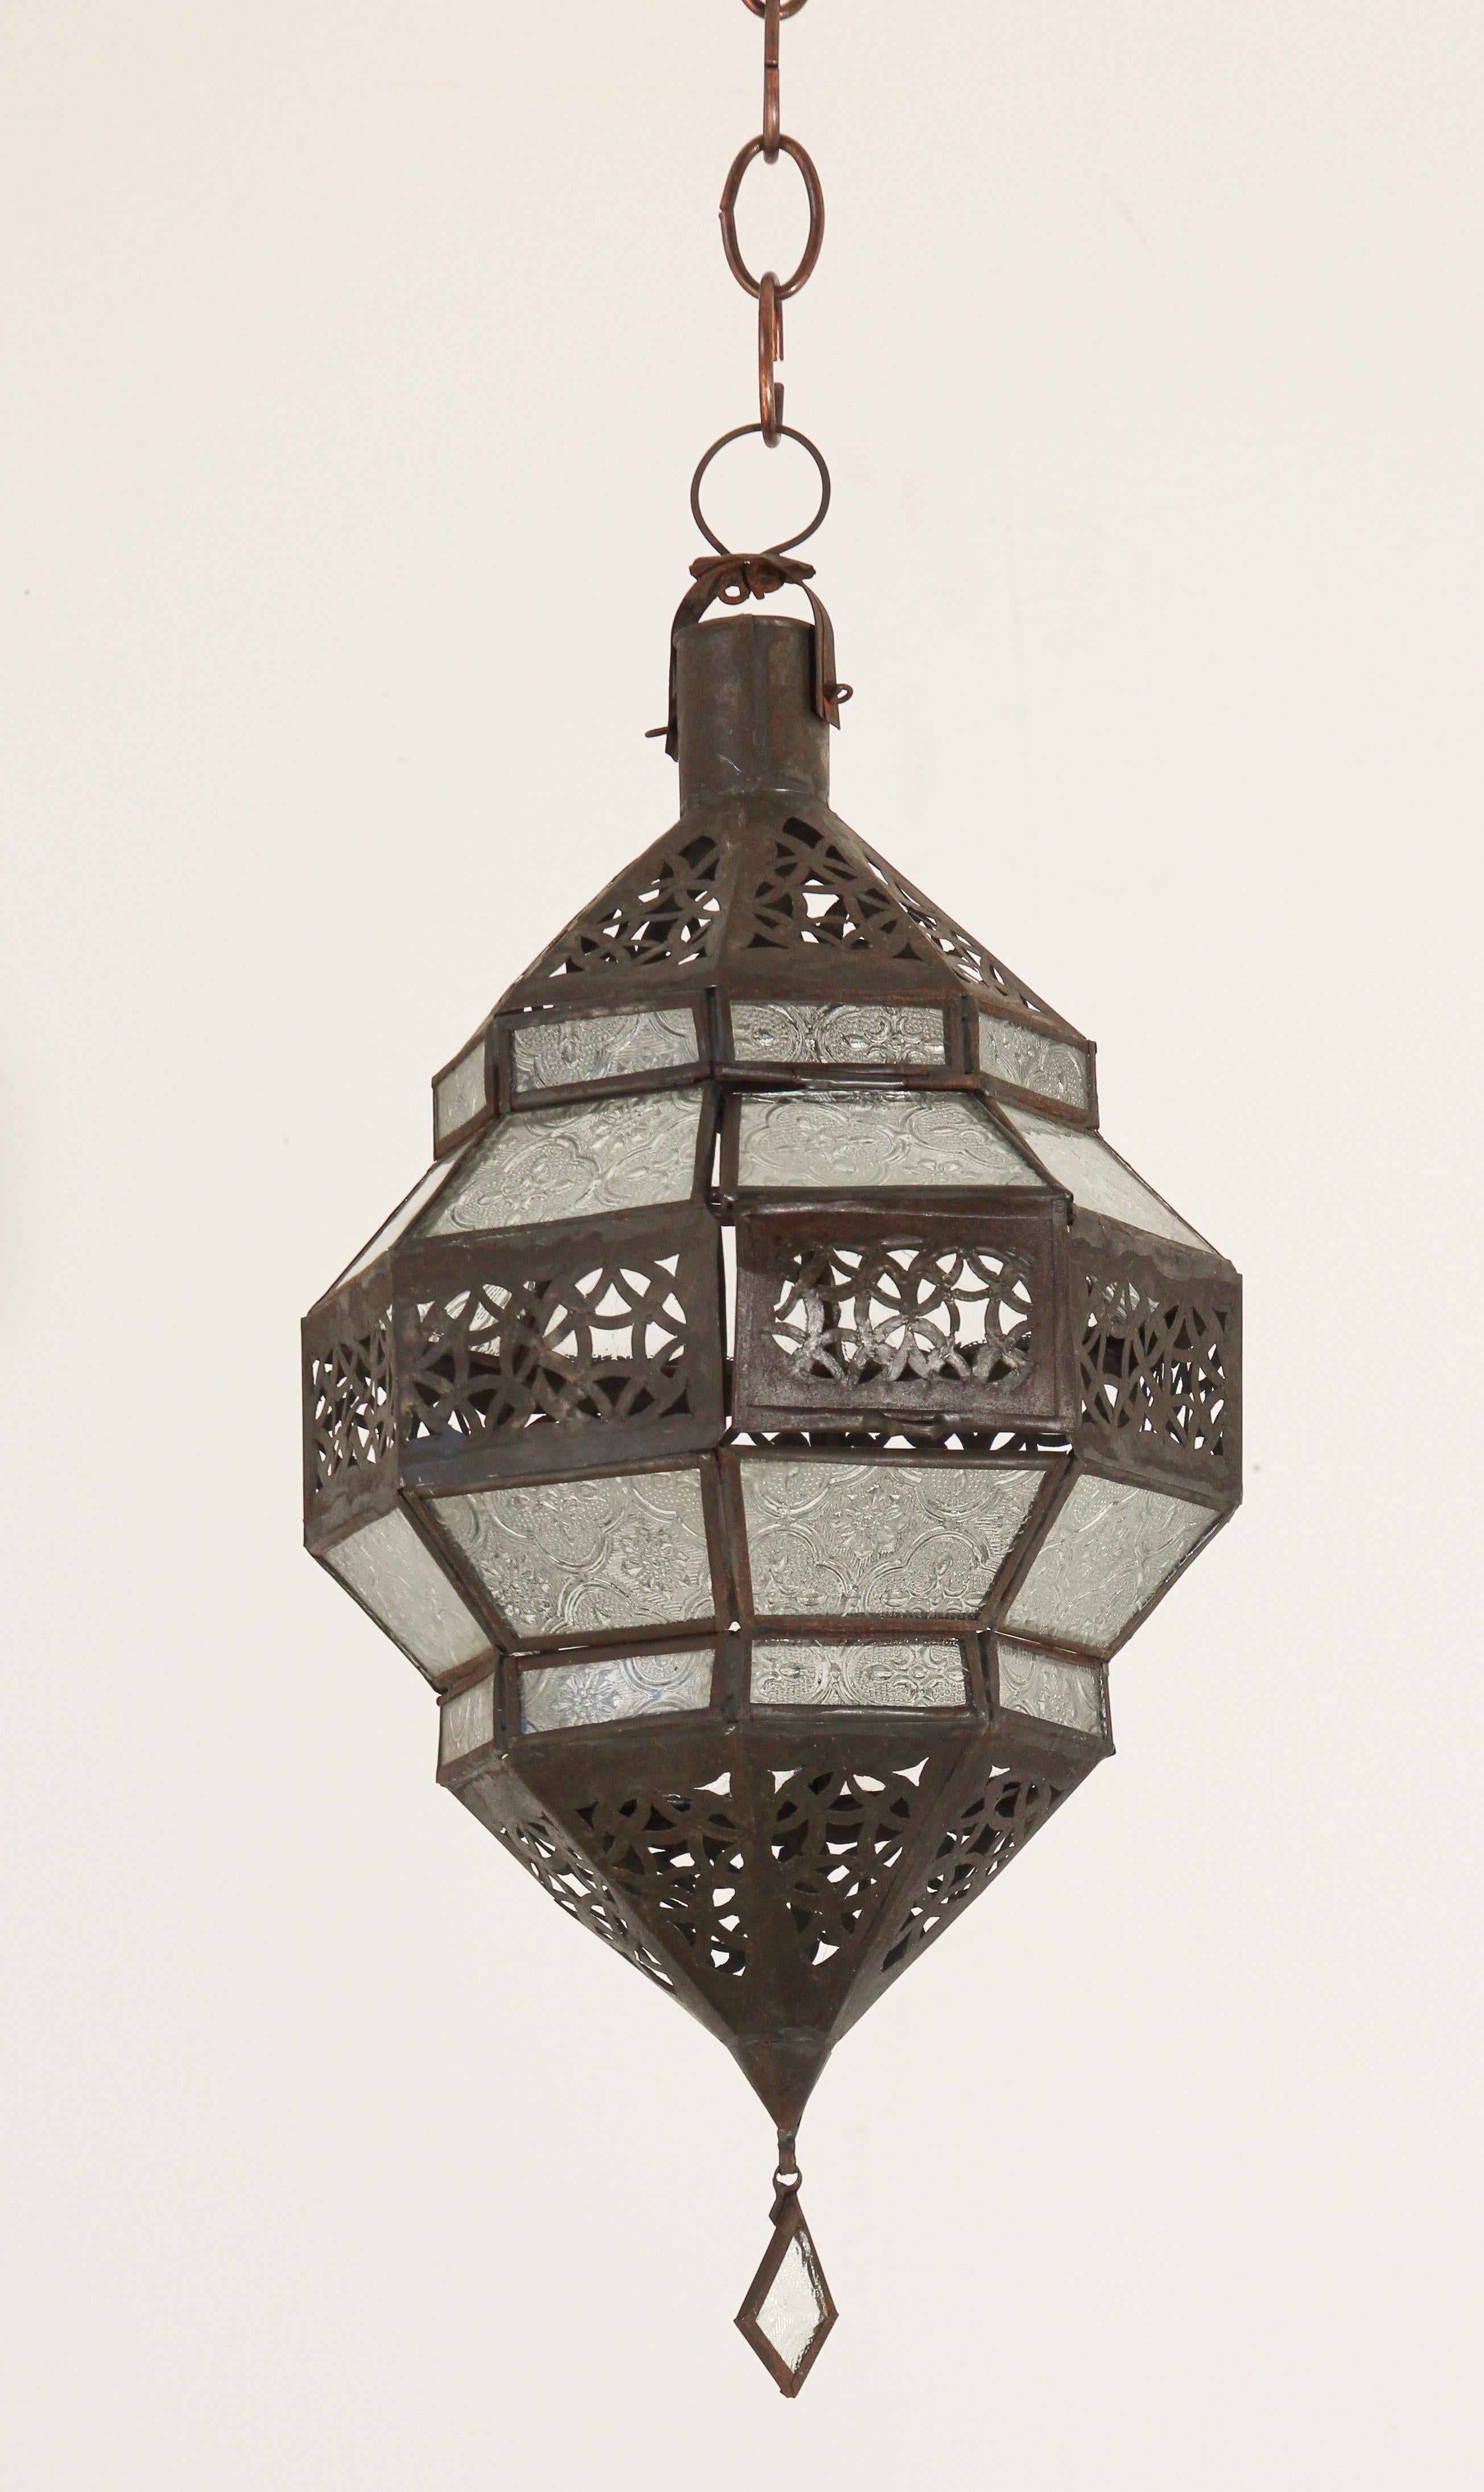 Lanterne marocaine en métal et verre dépoli transparent.
Lanterne marocaine de forme octogonale en métal couleur rouille et verre transparent.
Le métal du haut et du bas est découpé à la main dans un motif mauresque ajouré.
Cette lanterne marocaine,